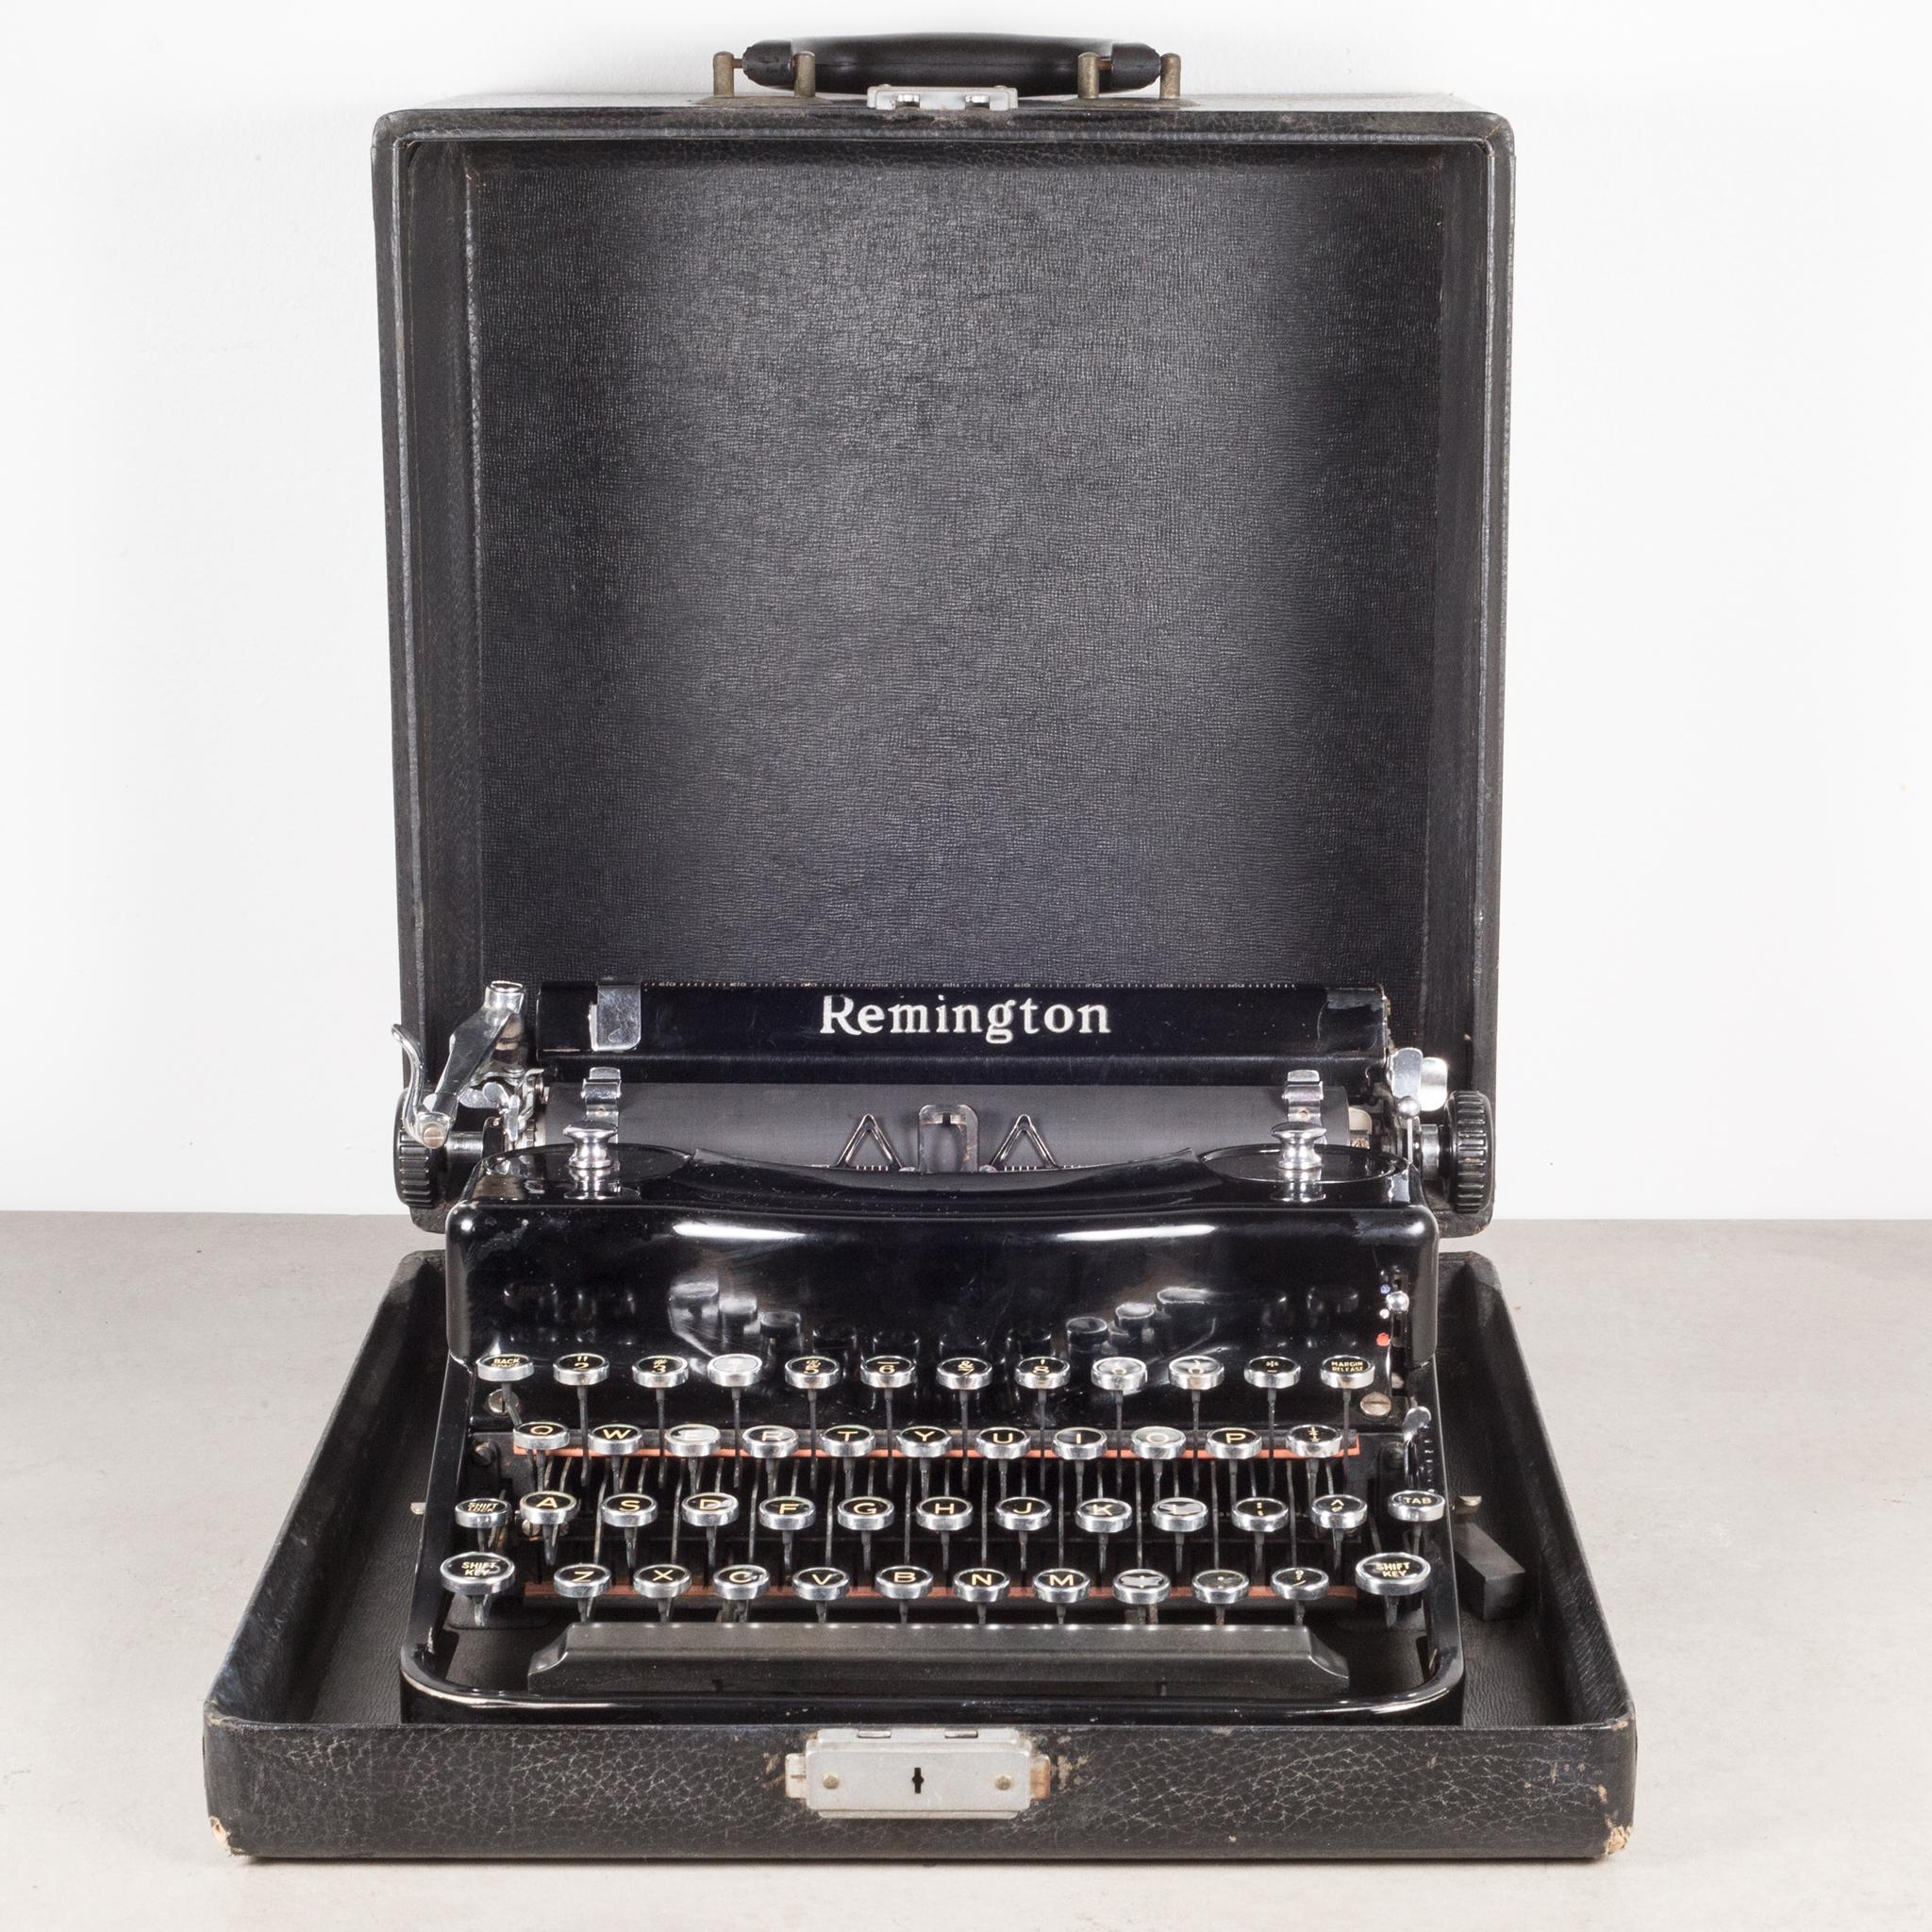 A propos de

Machine à écrire Remington modèle 1 entièrement remise à neuf:: finition noire brillante:: poignées chromées pour enrouler le ruban et étui d'origine. Les clés sont en nickel avec des lettres blanches sur un fond noir. Cette machine à